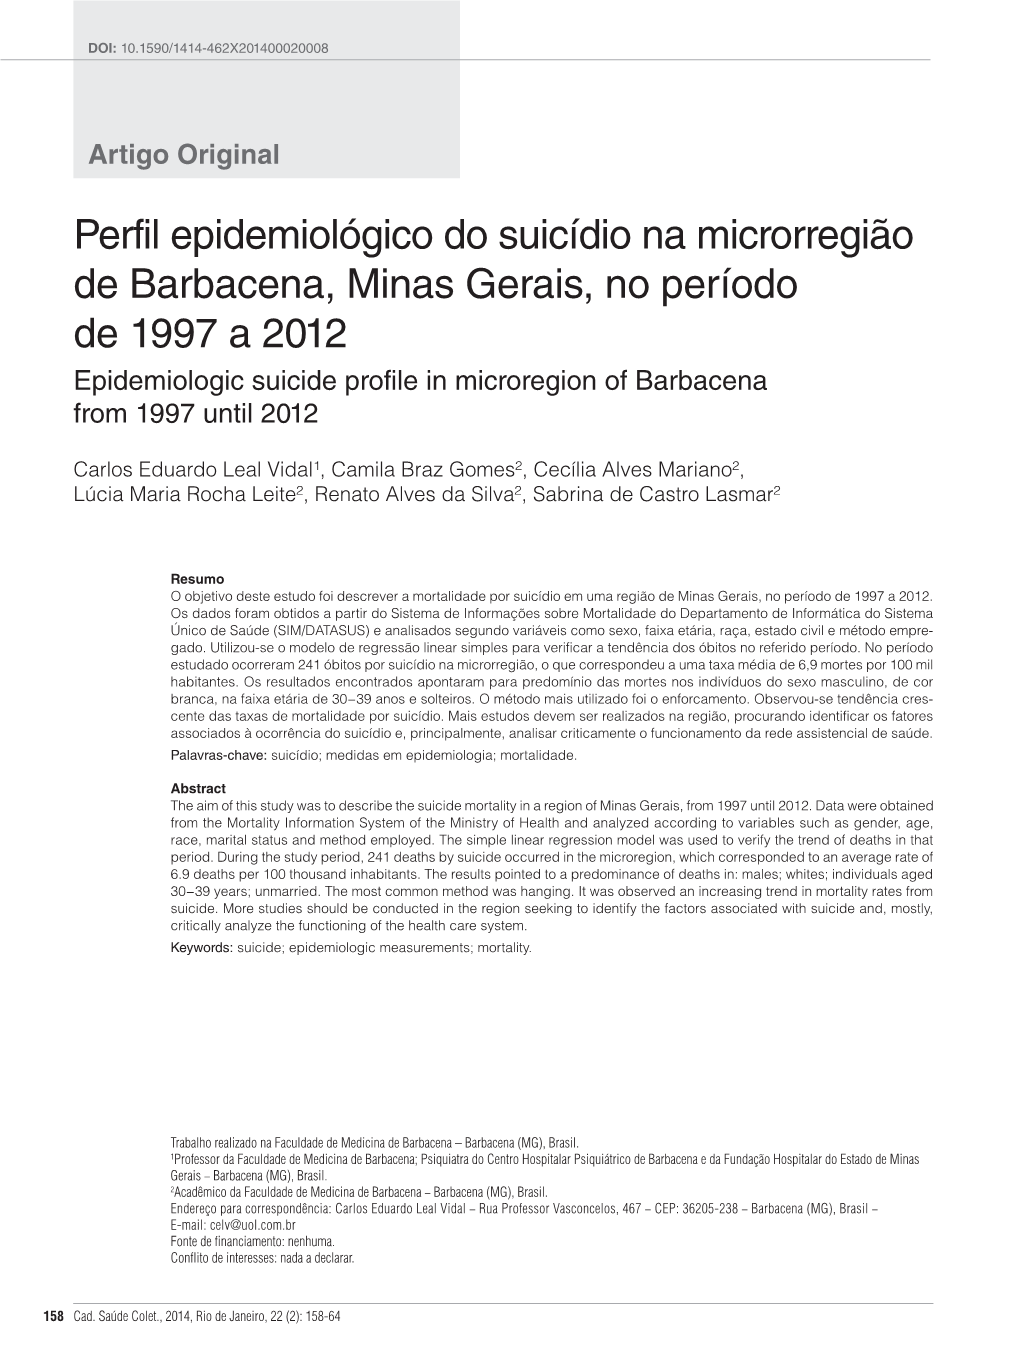 Perfil Epidemiológico Do Suicídio Na Microrregião De Barbacena, Minas